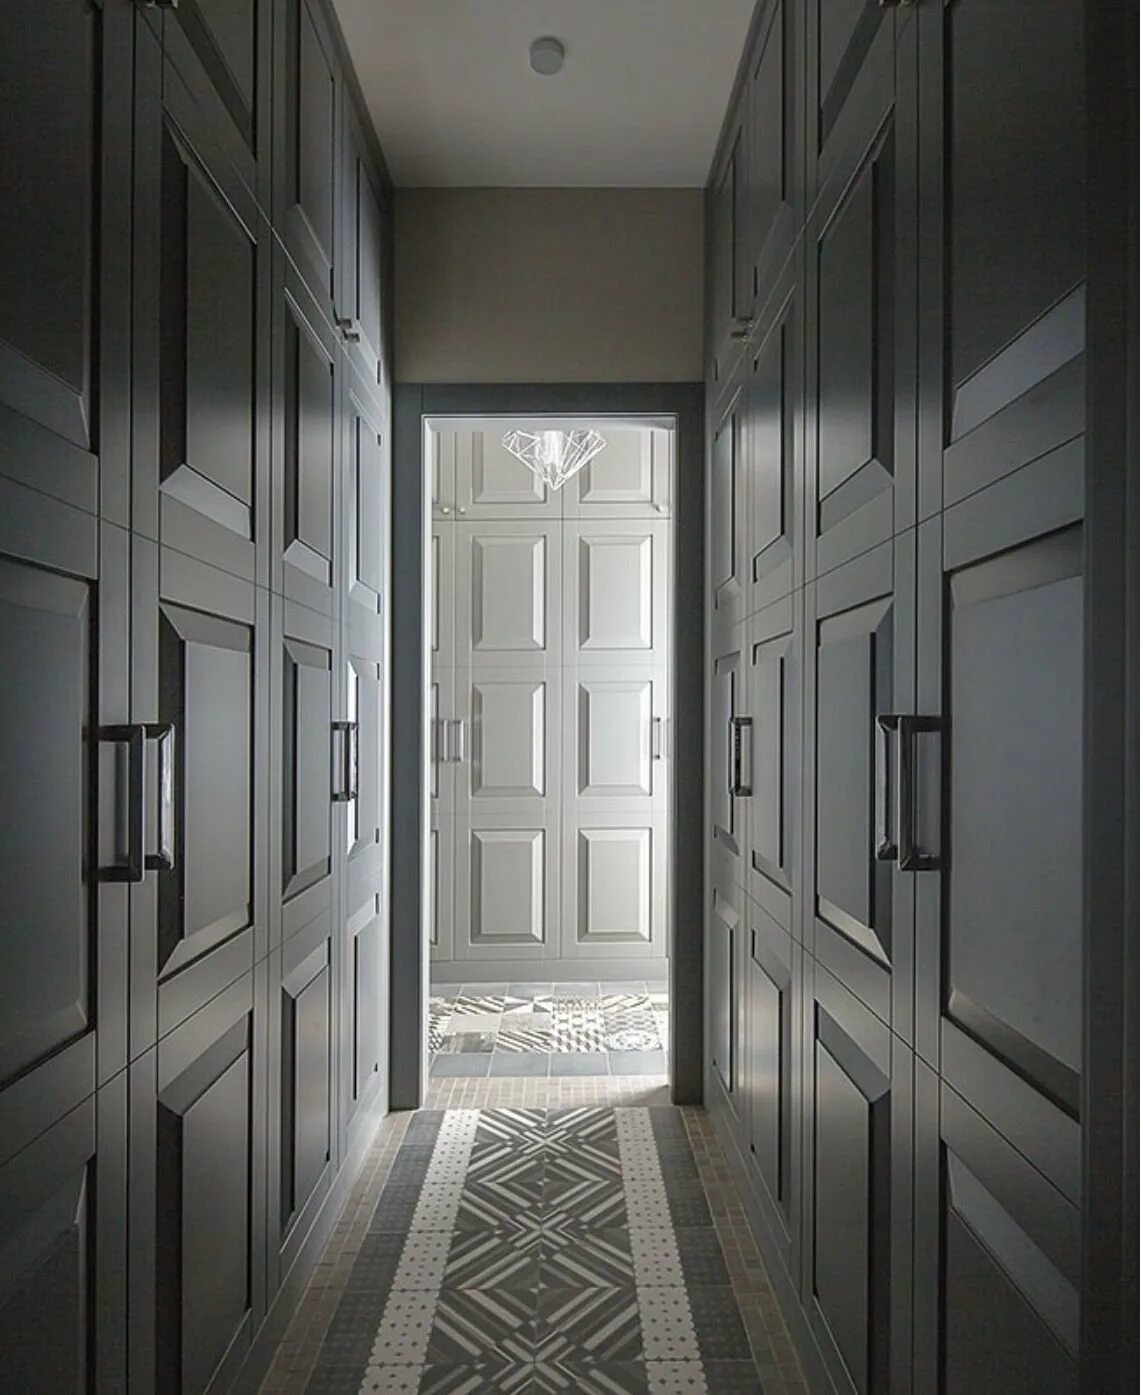 Длинный коридор с дверьми. Коридор с множеством дверей. Узкий коридор. Коридор с дверью.